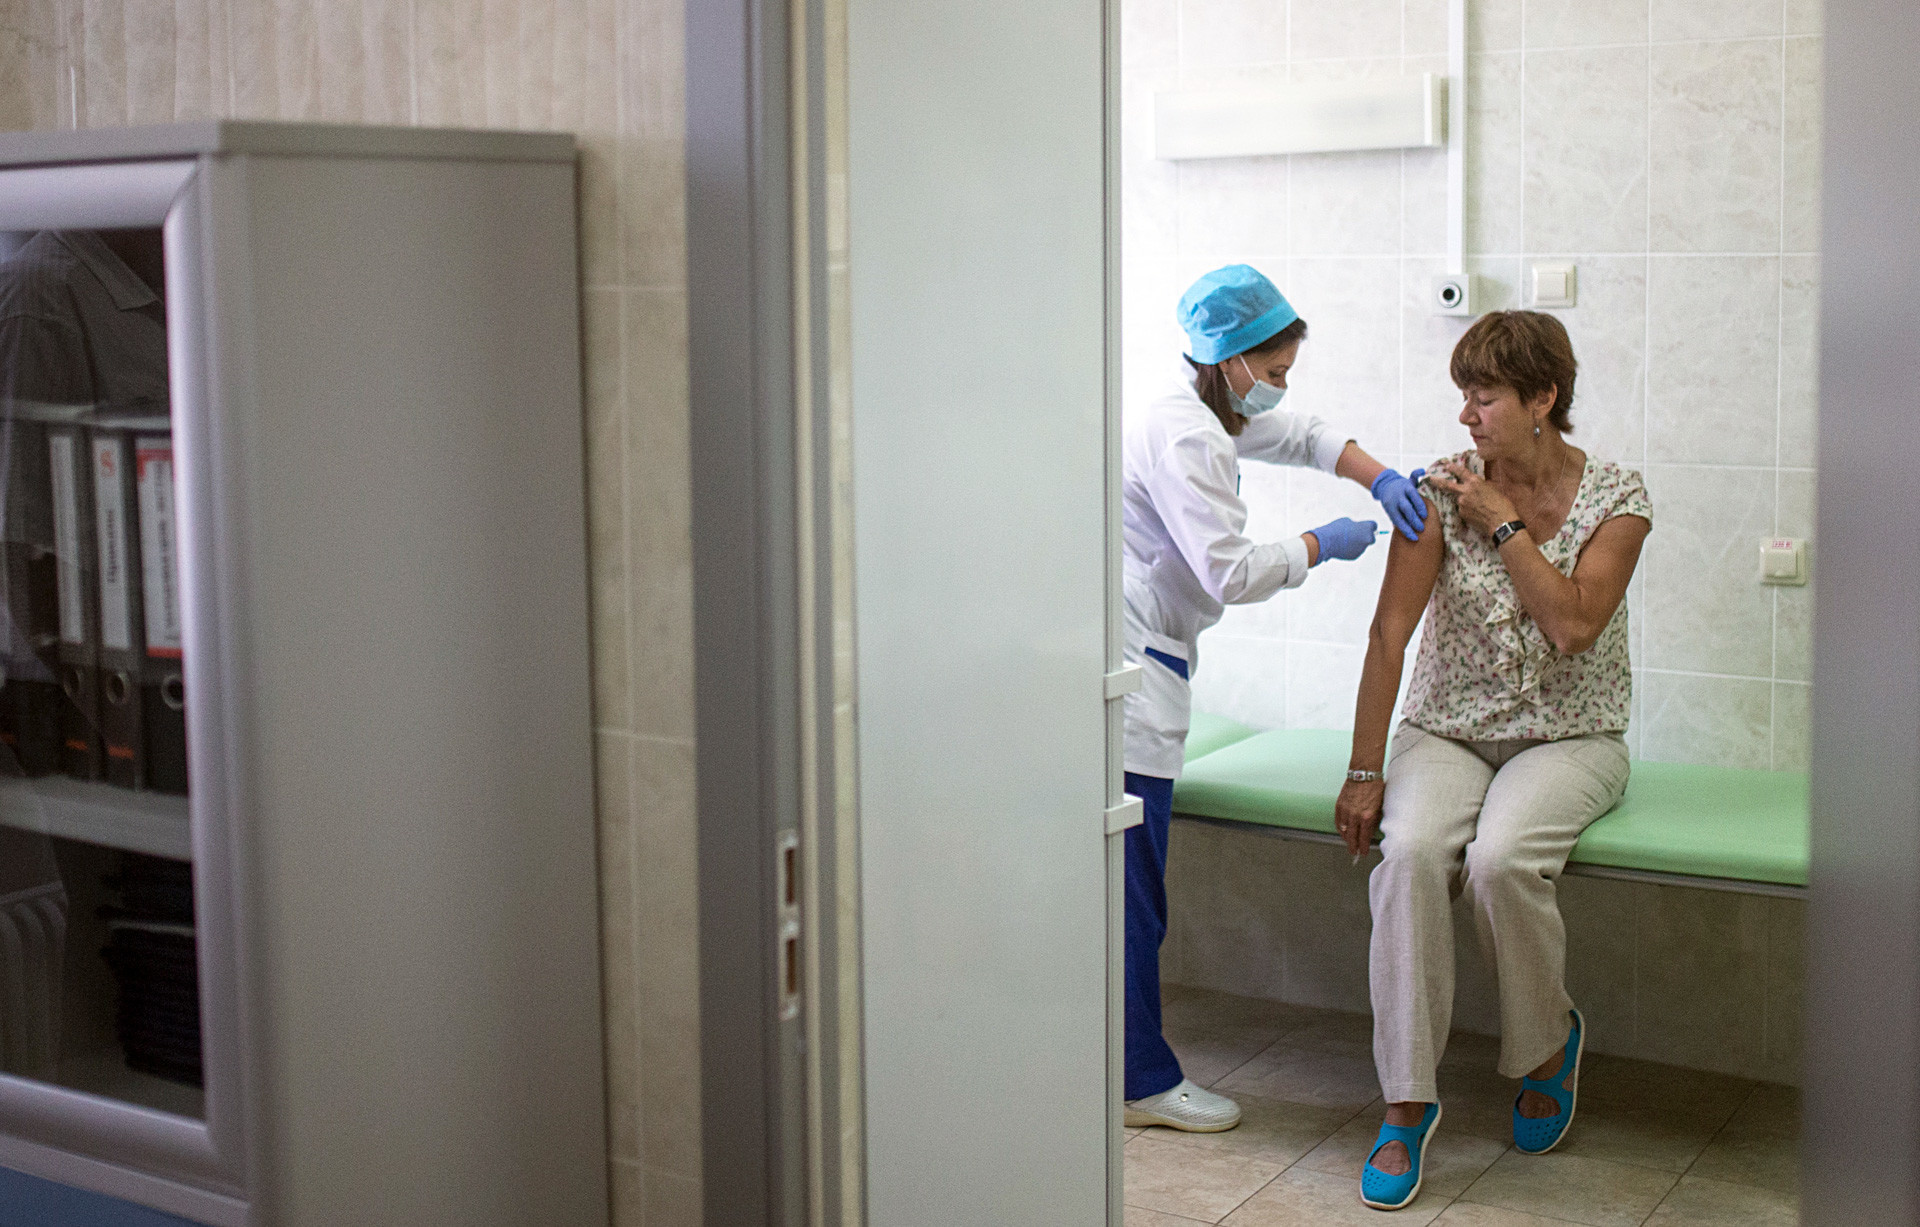 Cepljenje v javni kliniki v Moskvi. Rusko zdravstvo je daleč od idealnega, a je vsaj za zdaj še vedno brezplačno.